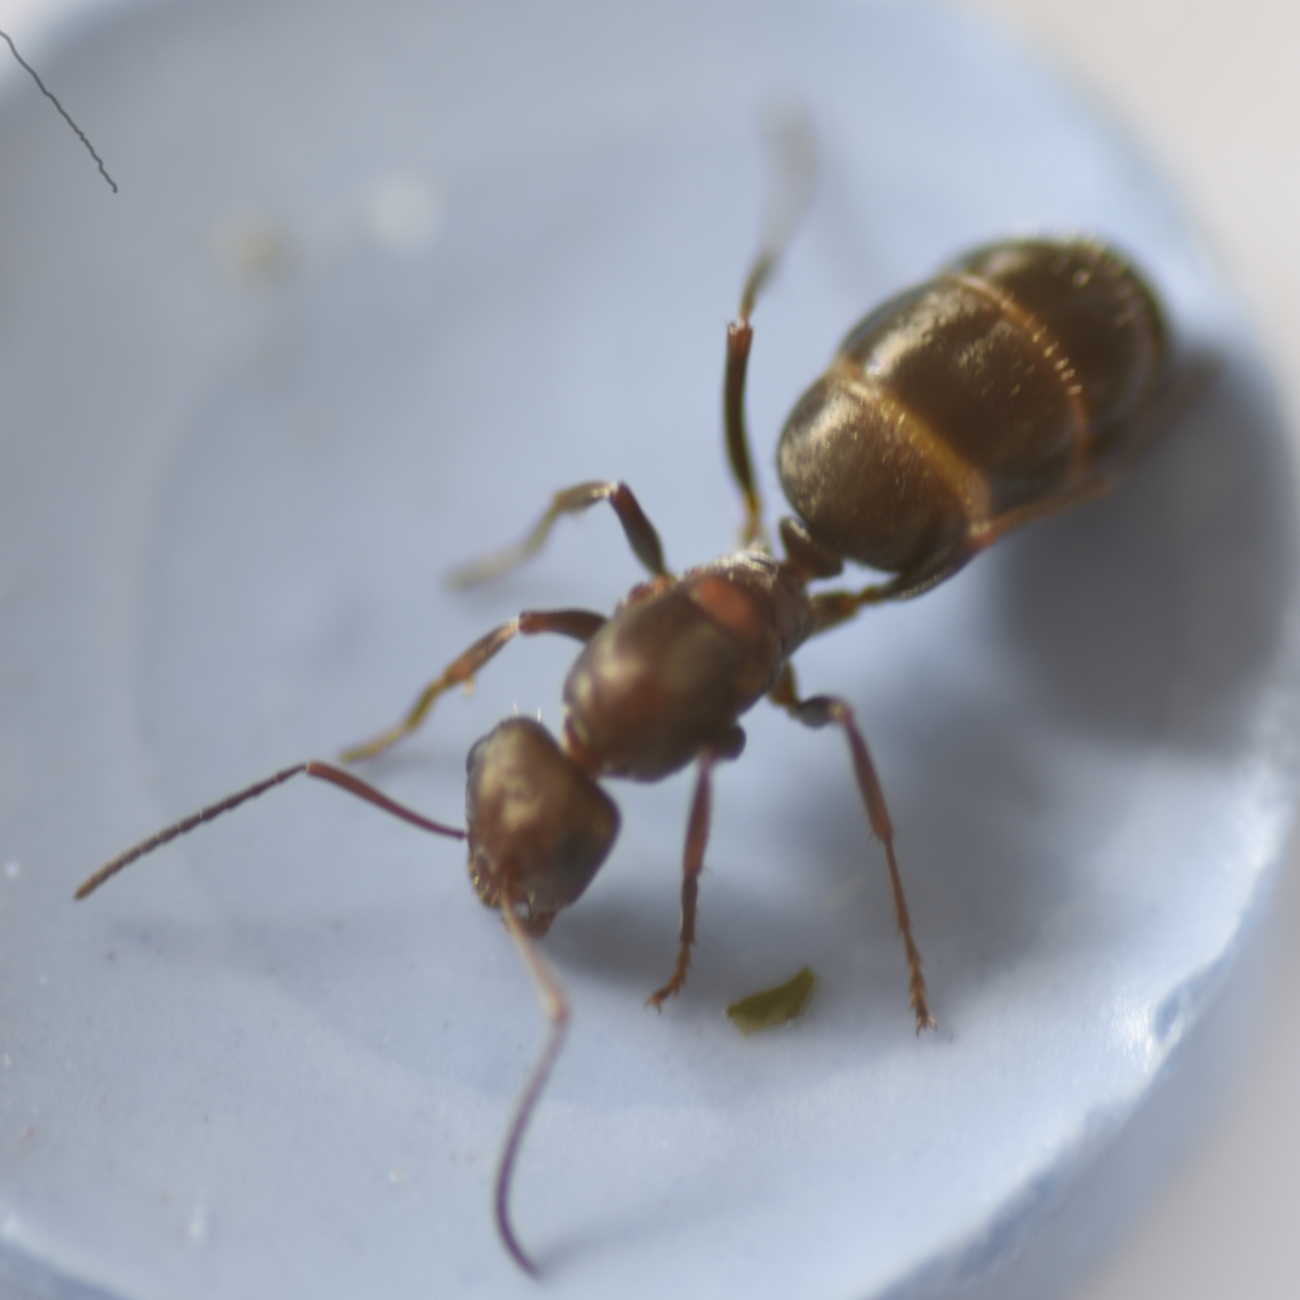 Identificacin: Camponotus Barbaricus? Reina?